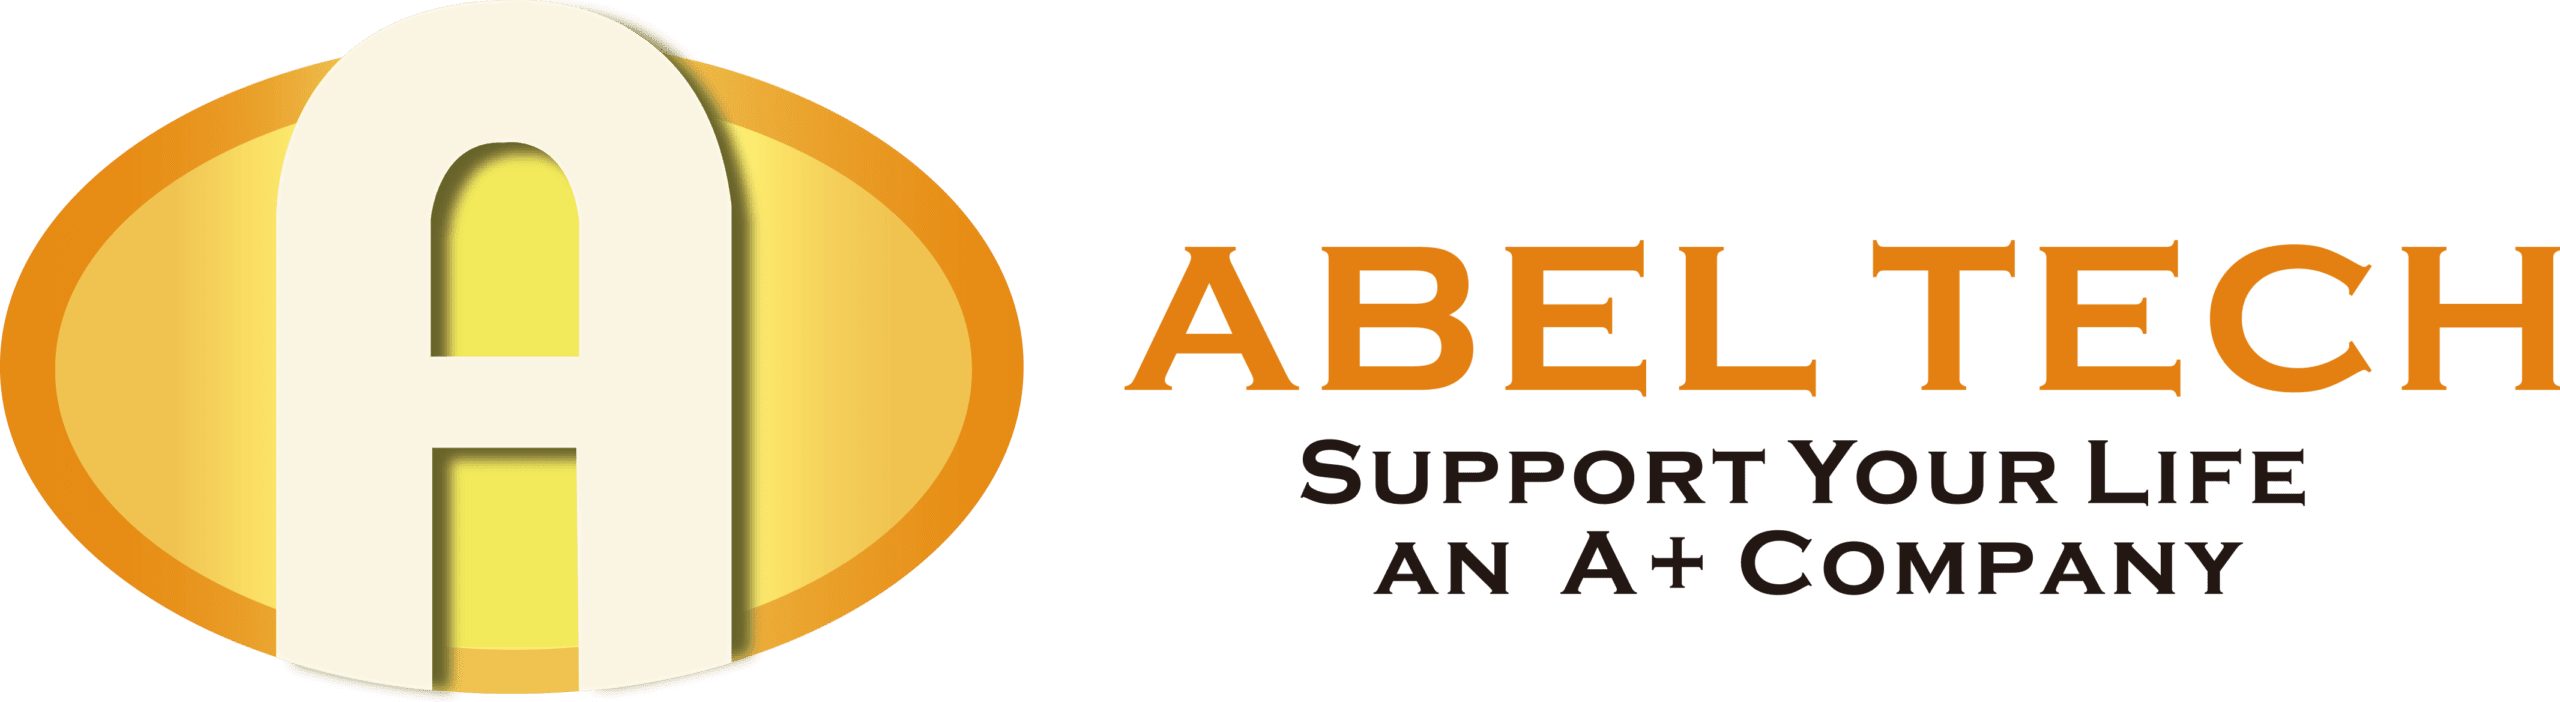 Abeltech-楷伸科技有限公司